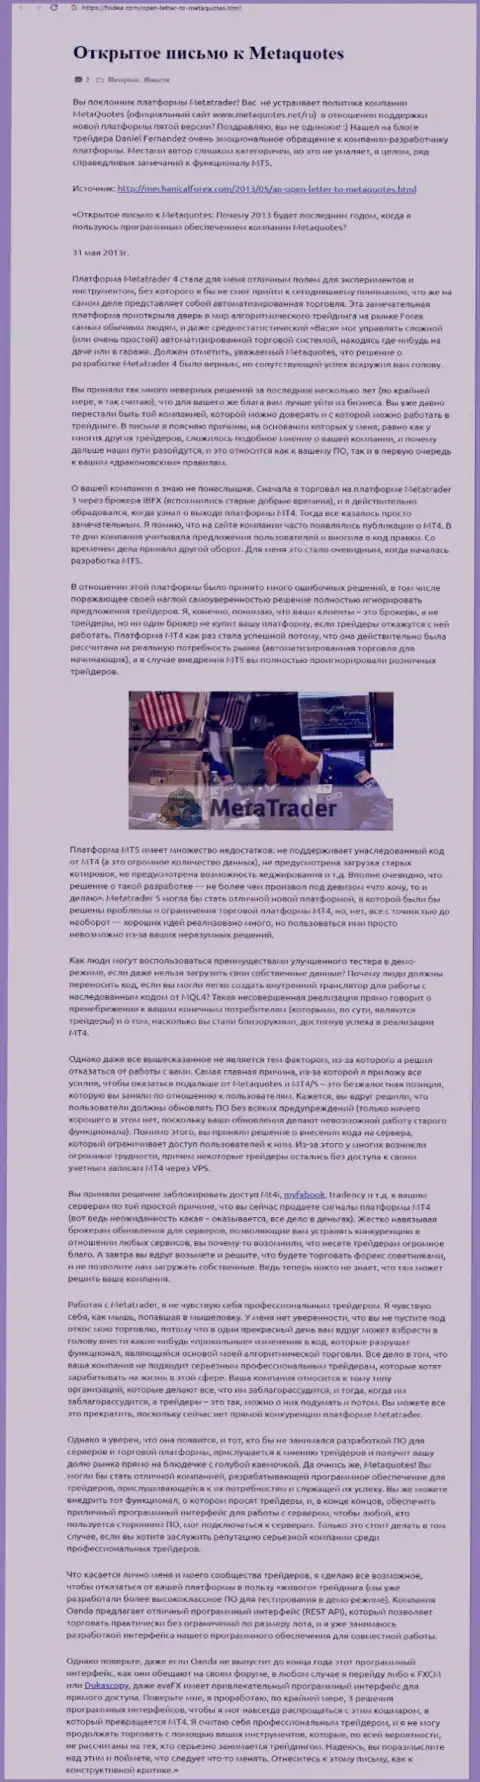 Отзыв валютного трейдера мошенников MetaQuotes, где он обозначил личное мнение об указанной компании